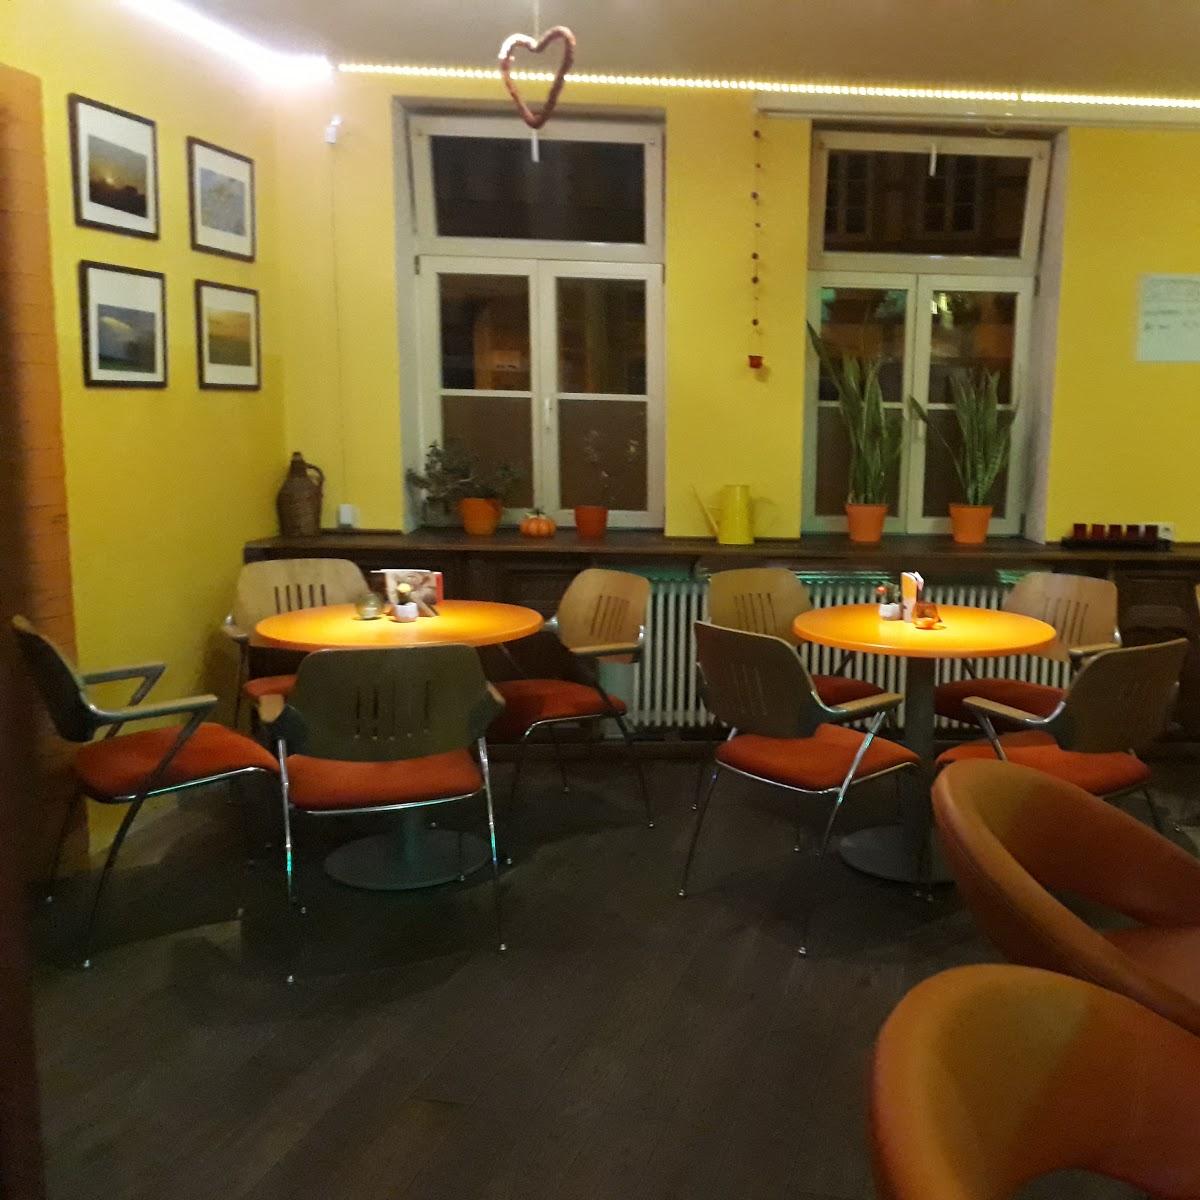 Restaurant "Kulturwirtschaft Papermoon" in Halberstadt